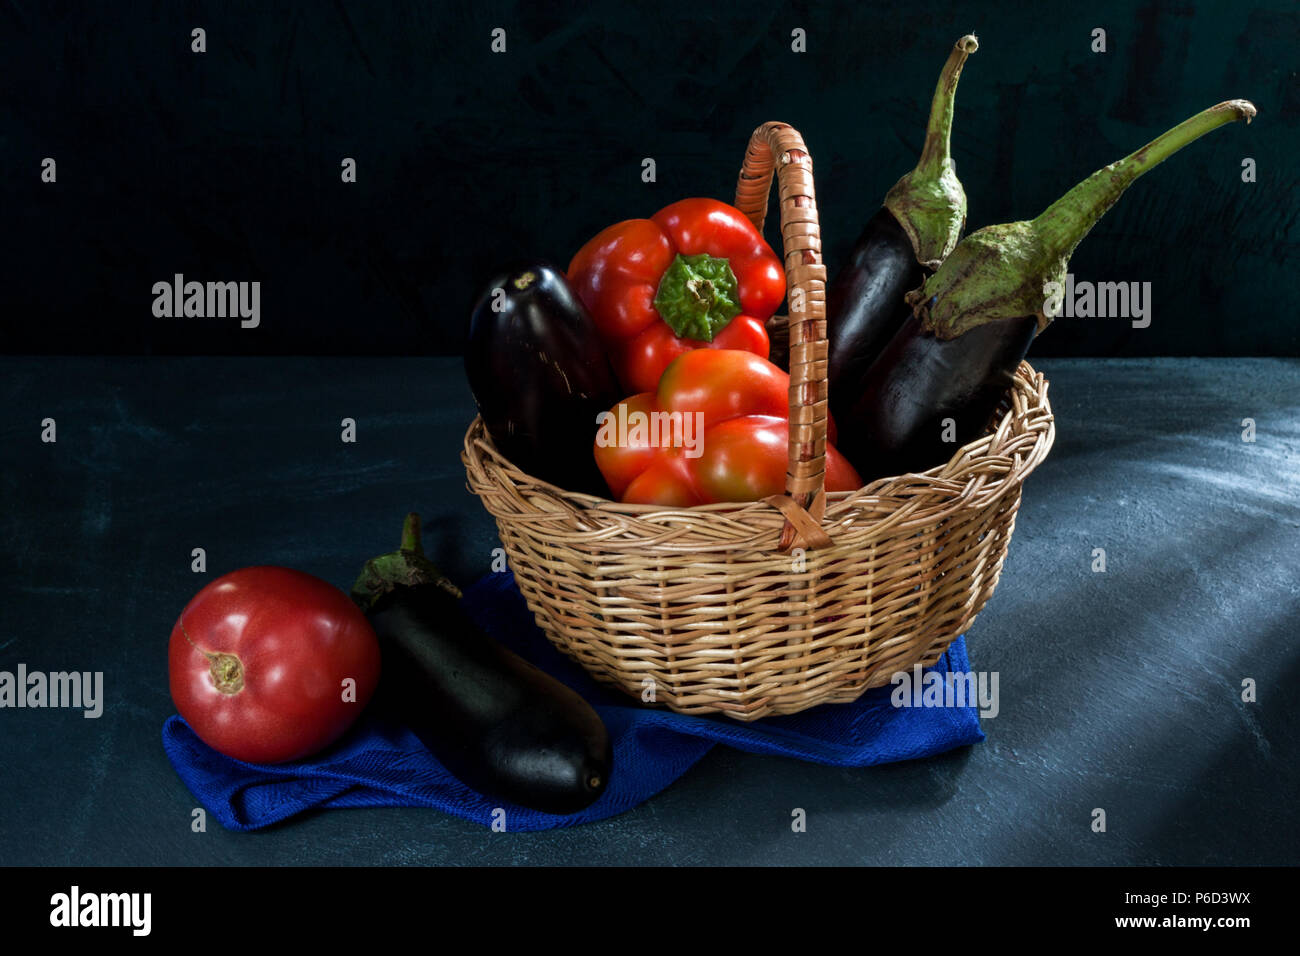 Les légumes en panier d'osier et de l'aubergine et tomate sur serviette bleue sur fond sombre. Banque D'Images